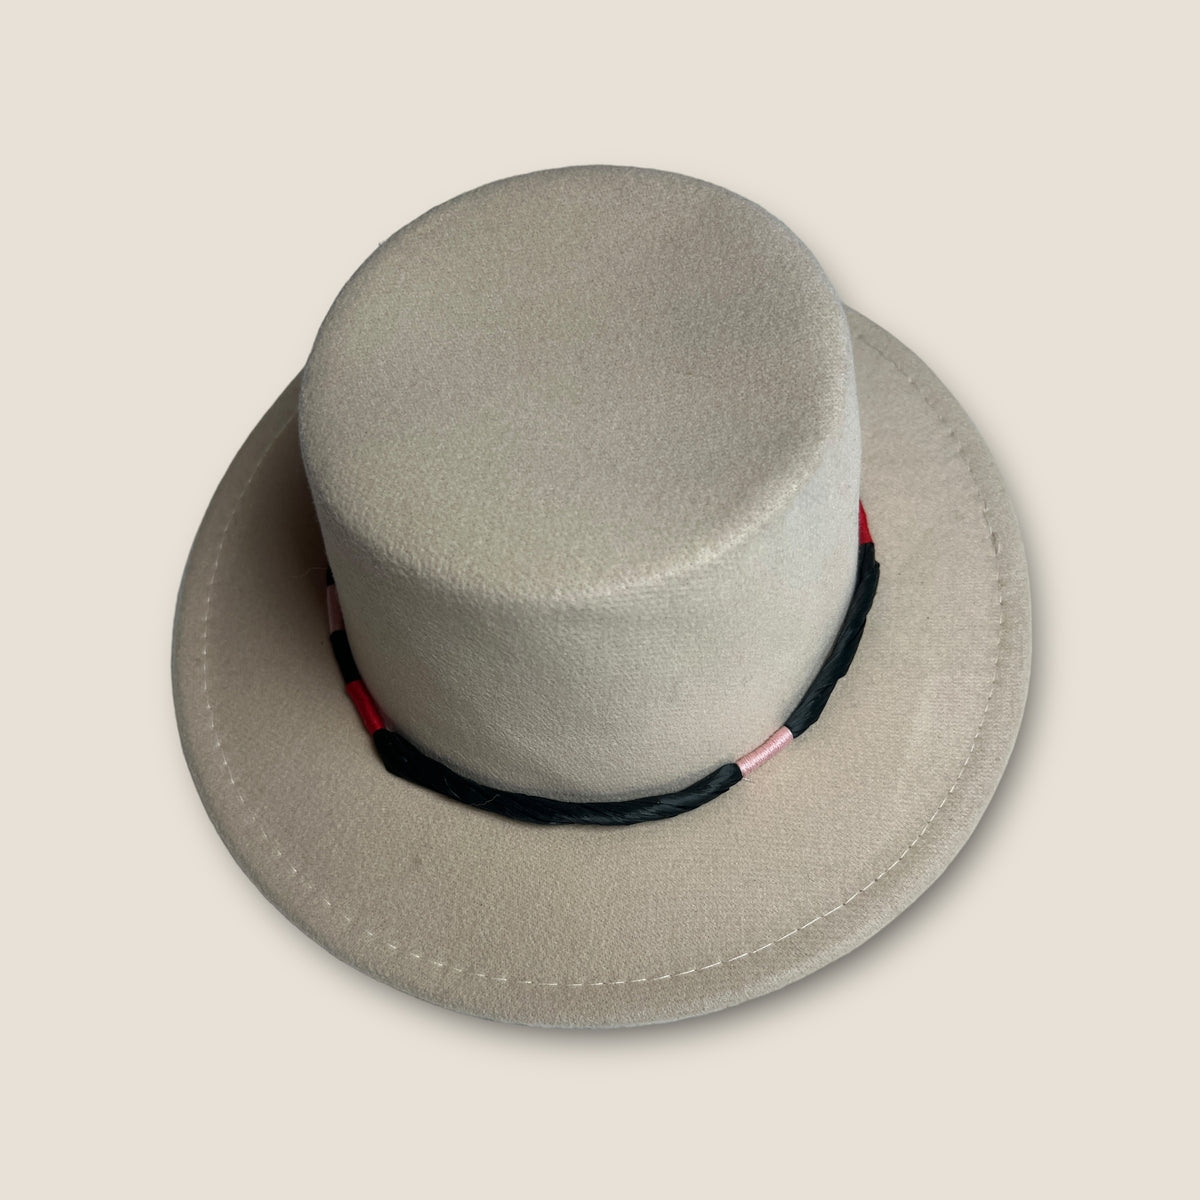 Tia Cibani Hat size Medium